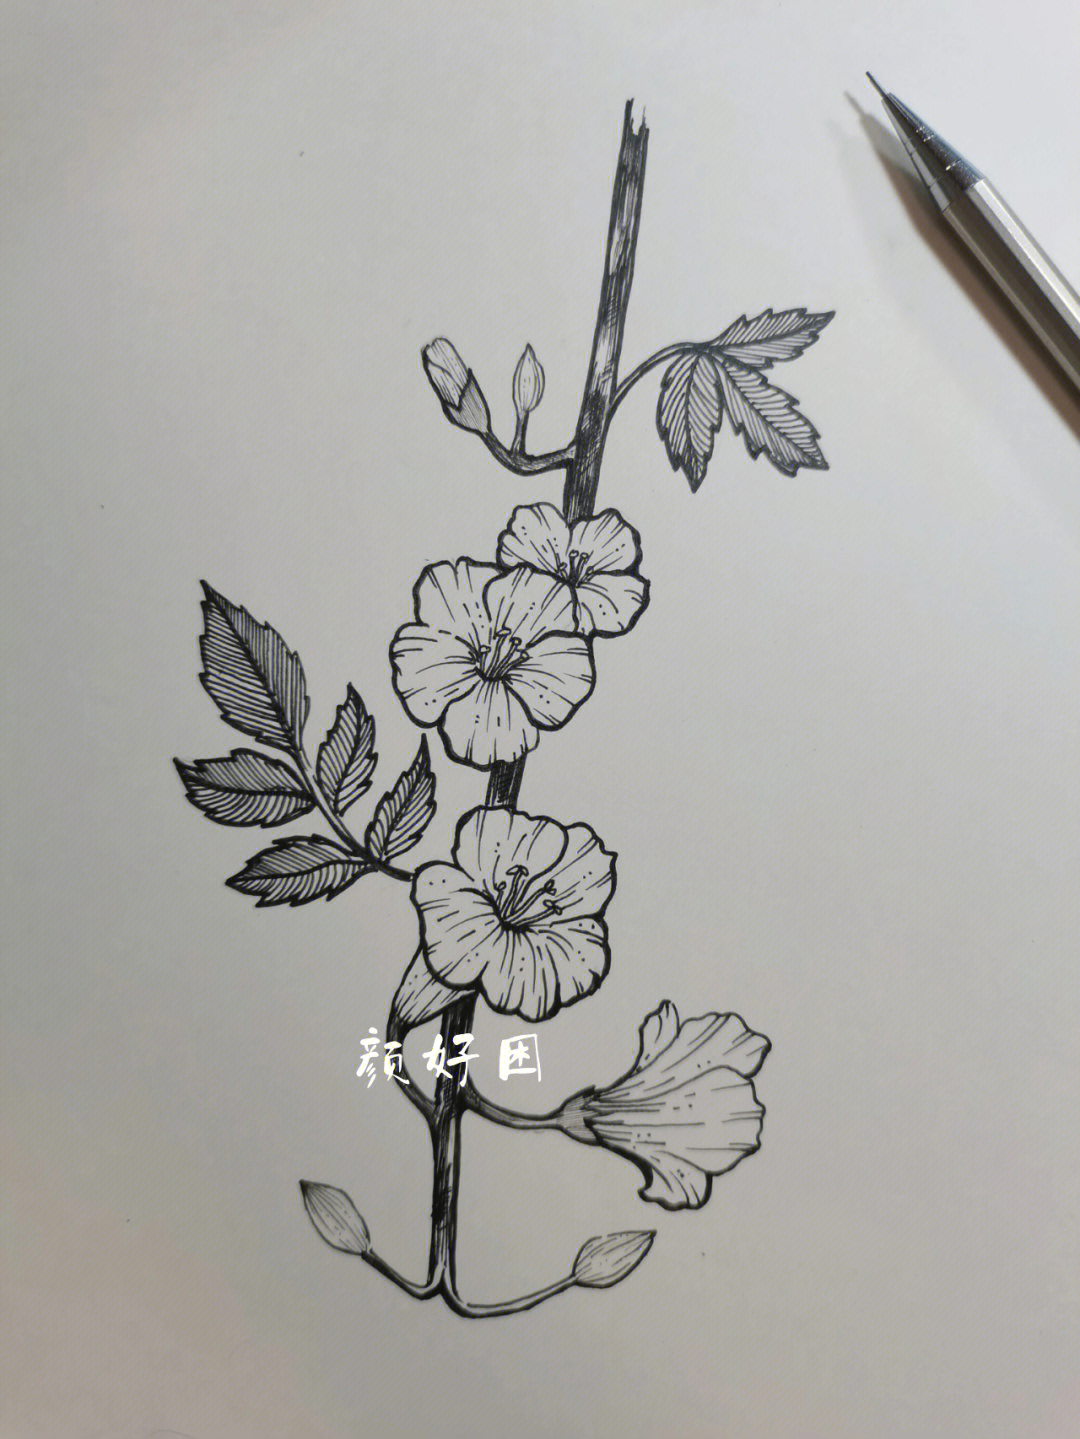 清晰线描花卉画花朵图片